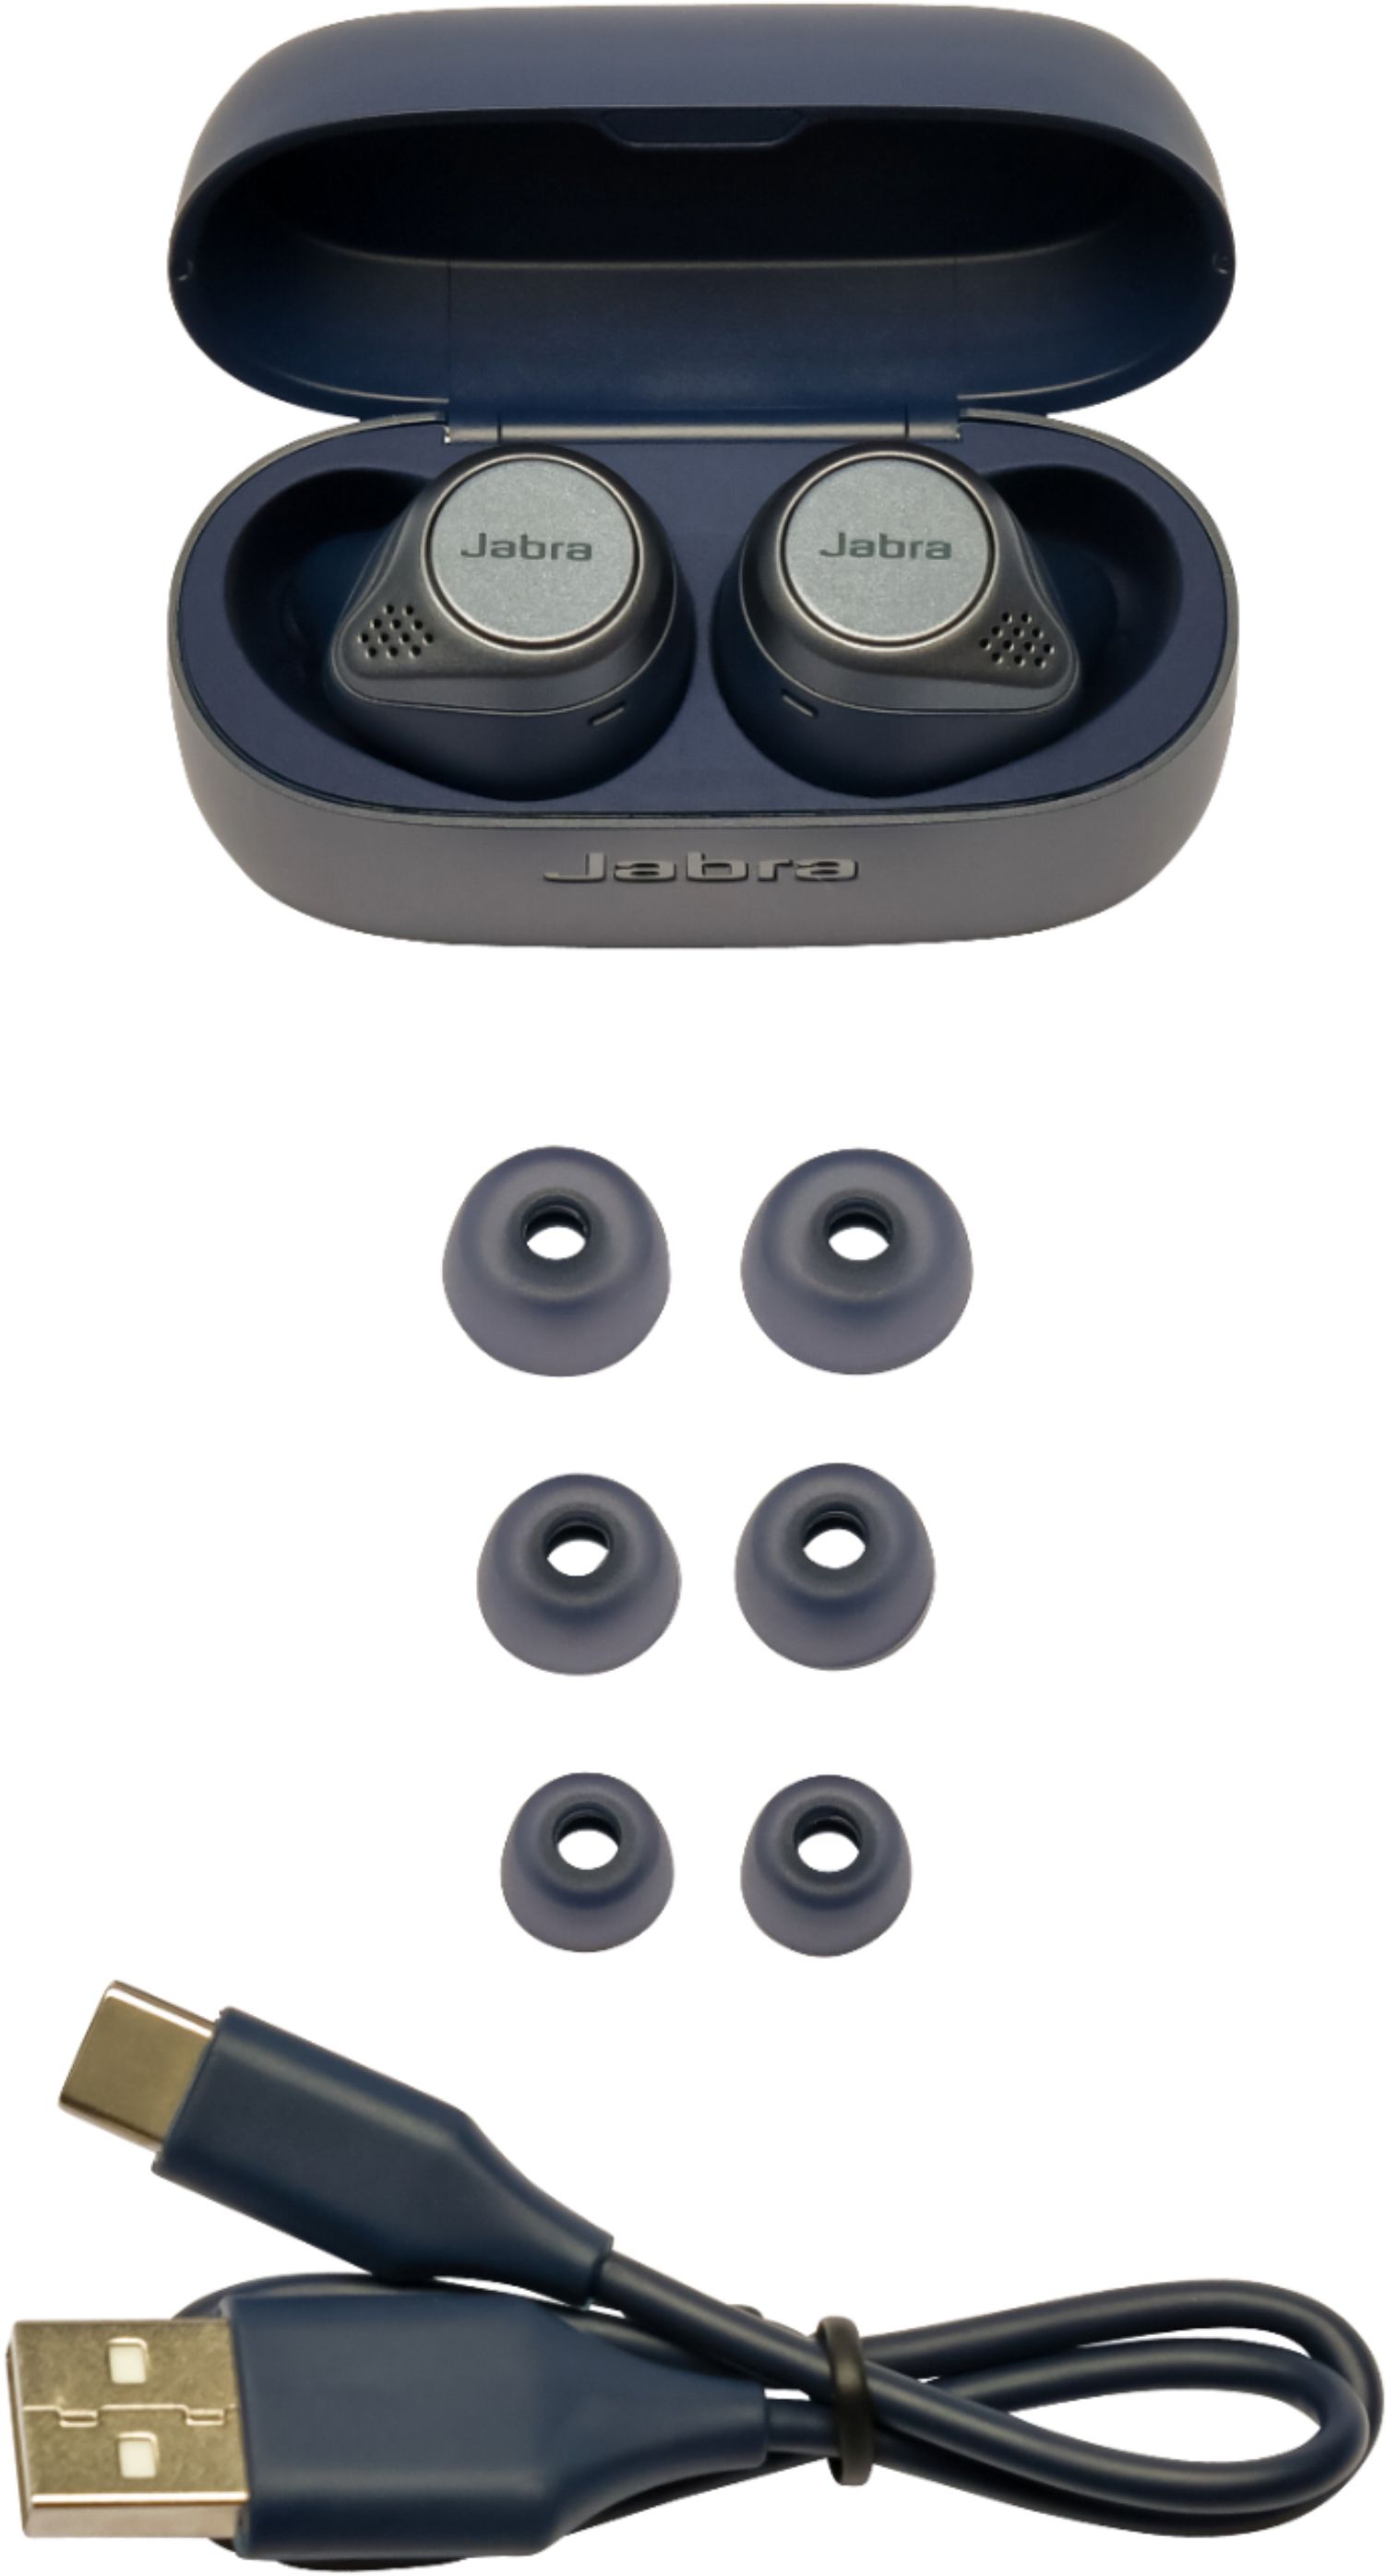 Brand New Jabra Elite Active 75t True Wireless In-Ear Headphones - Navy